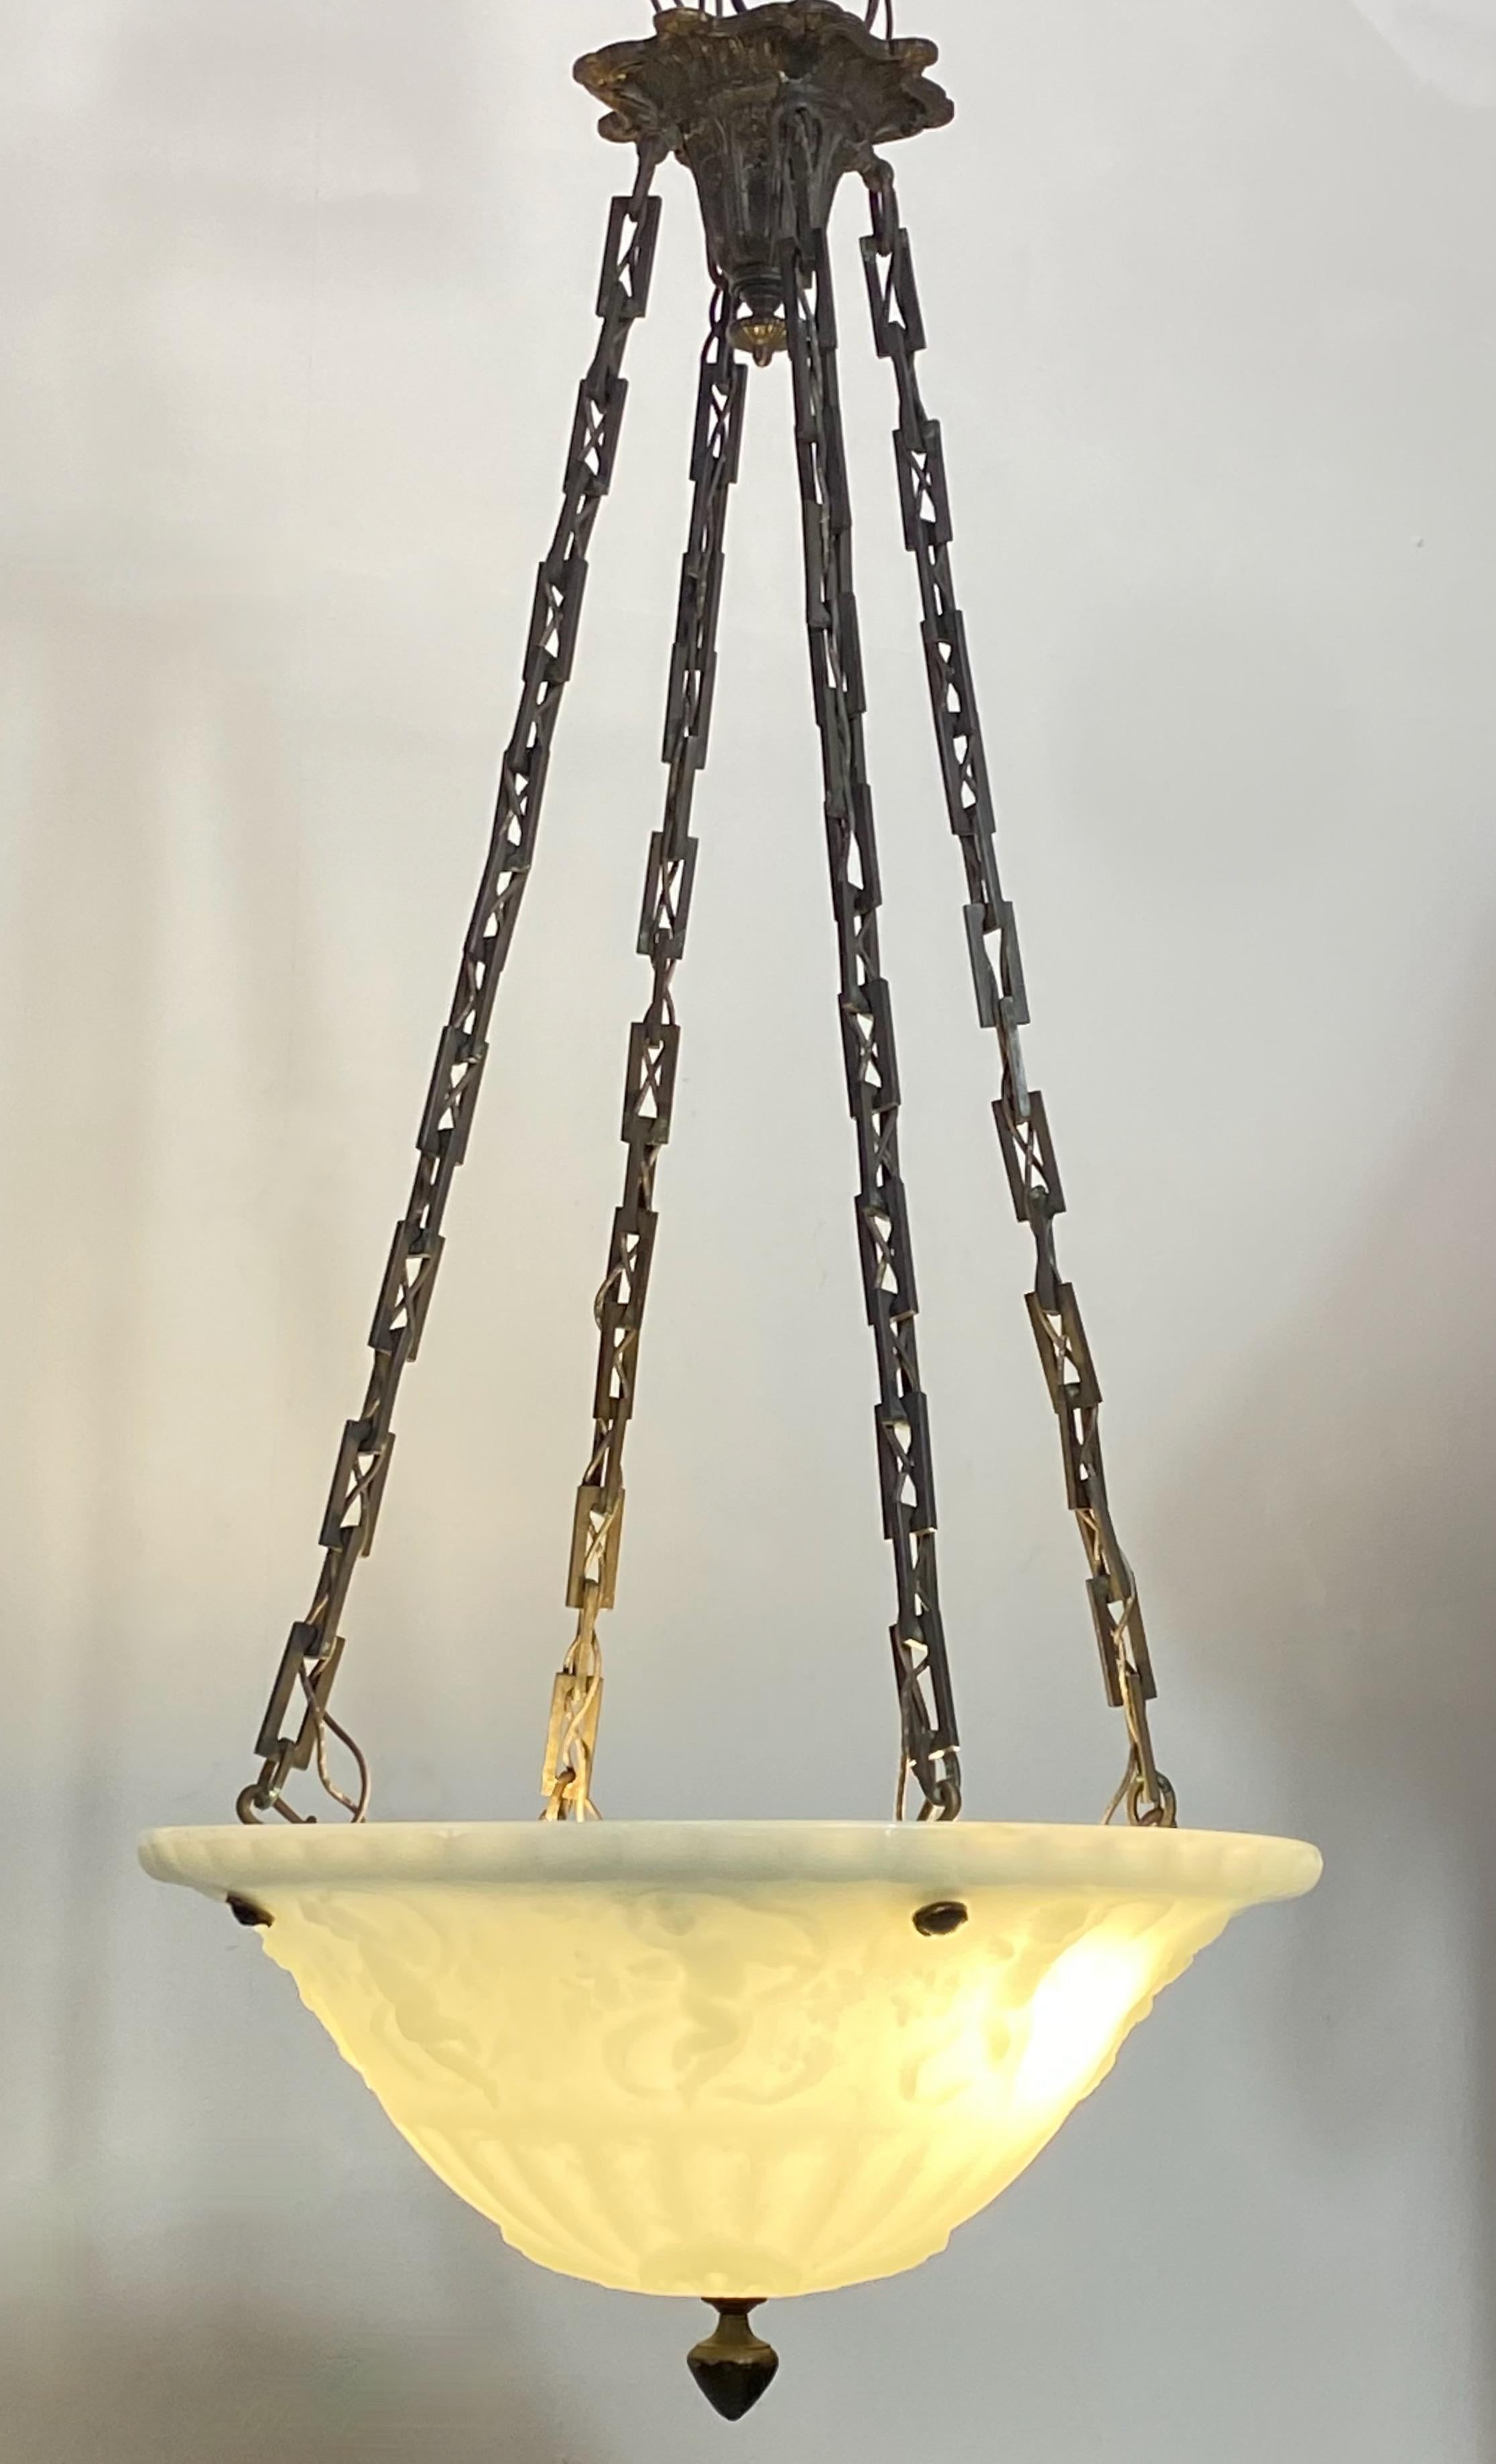 antique hanging light fixtures